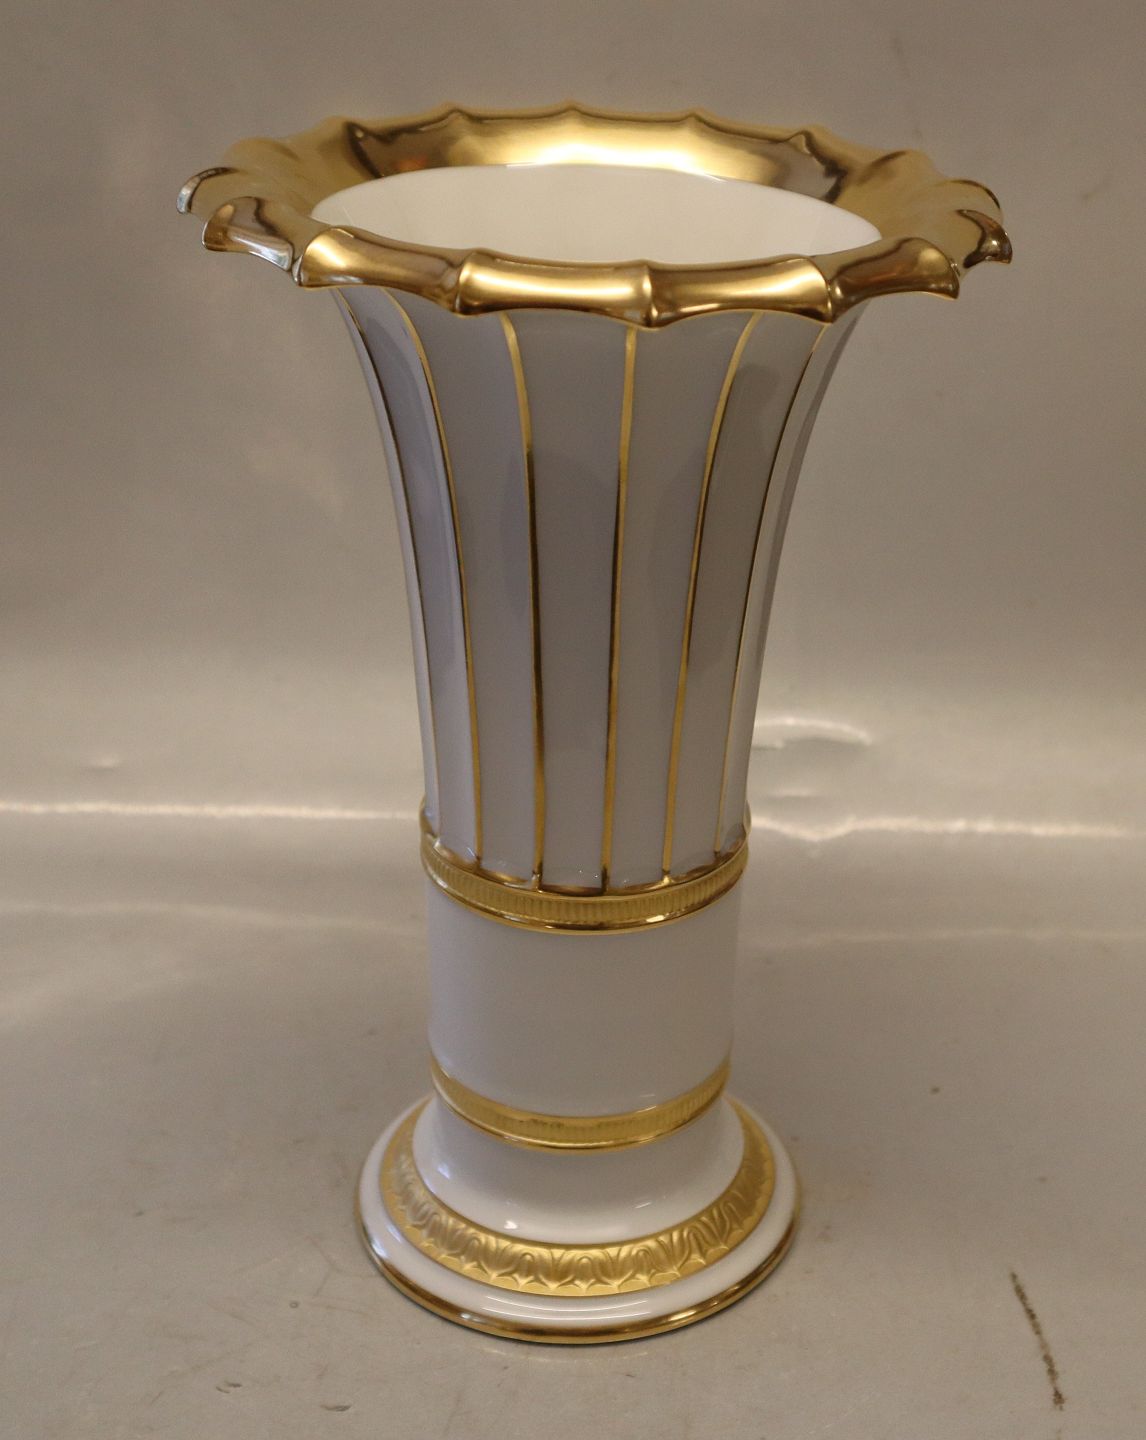 KAD ringen - Royal Copenhagen RC 8569 Hetsch 26.5 cm with gold - Royal Copenhagen RC 8569 Hetsch Vase 26.5 cm with